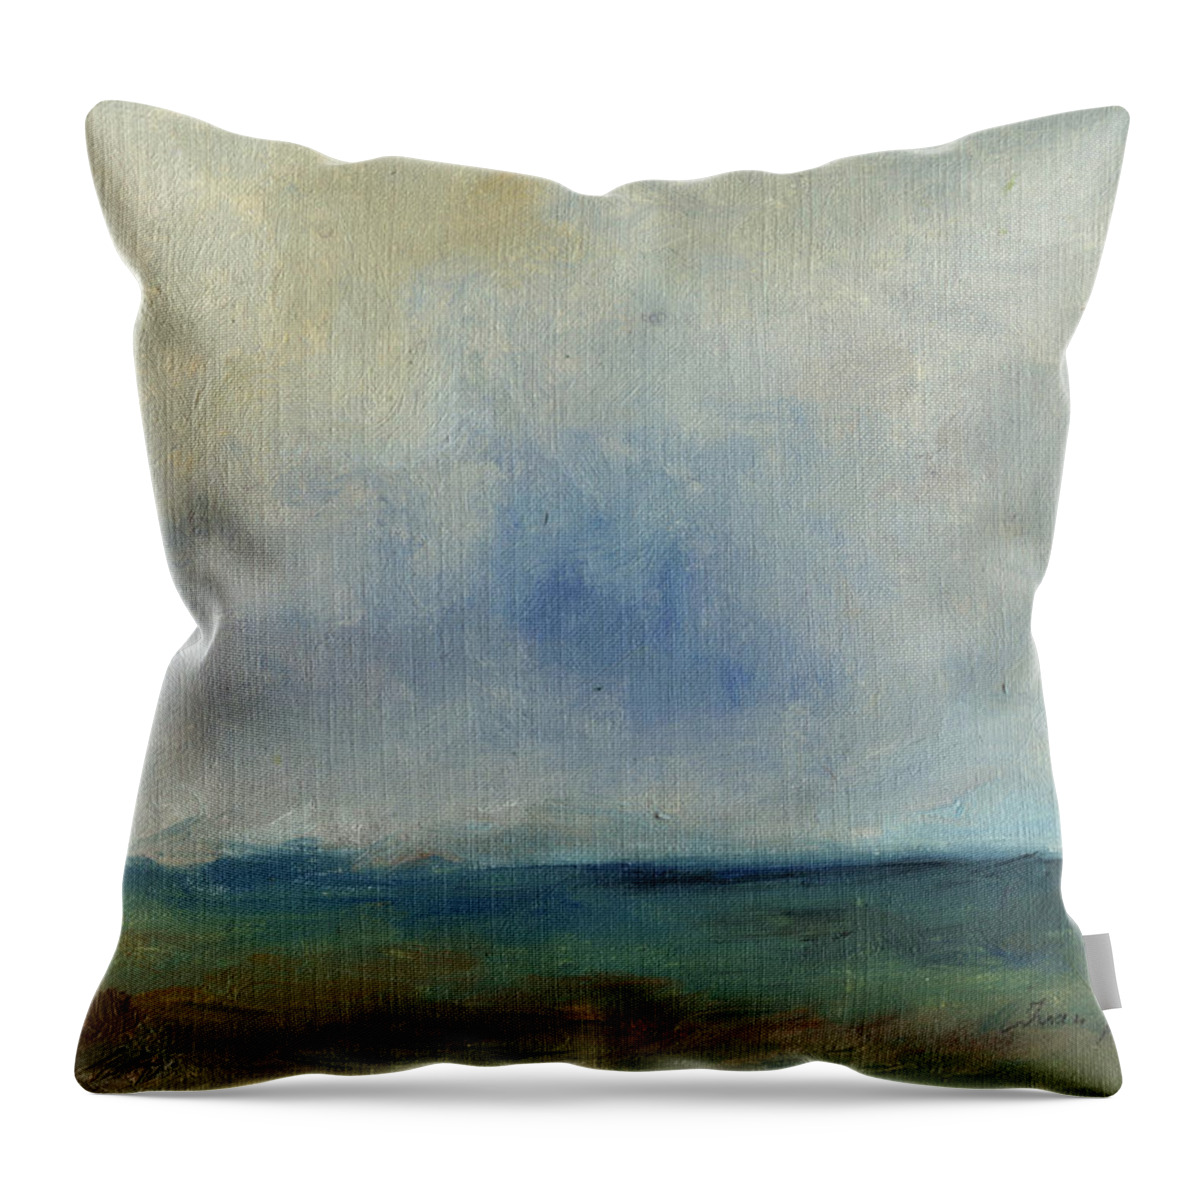  Abstract Art Throw Pillow featuring the painting Caladero de sardina by Juan Bosco